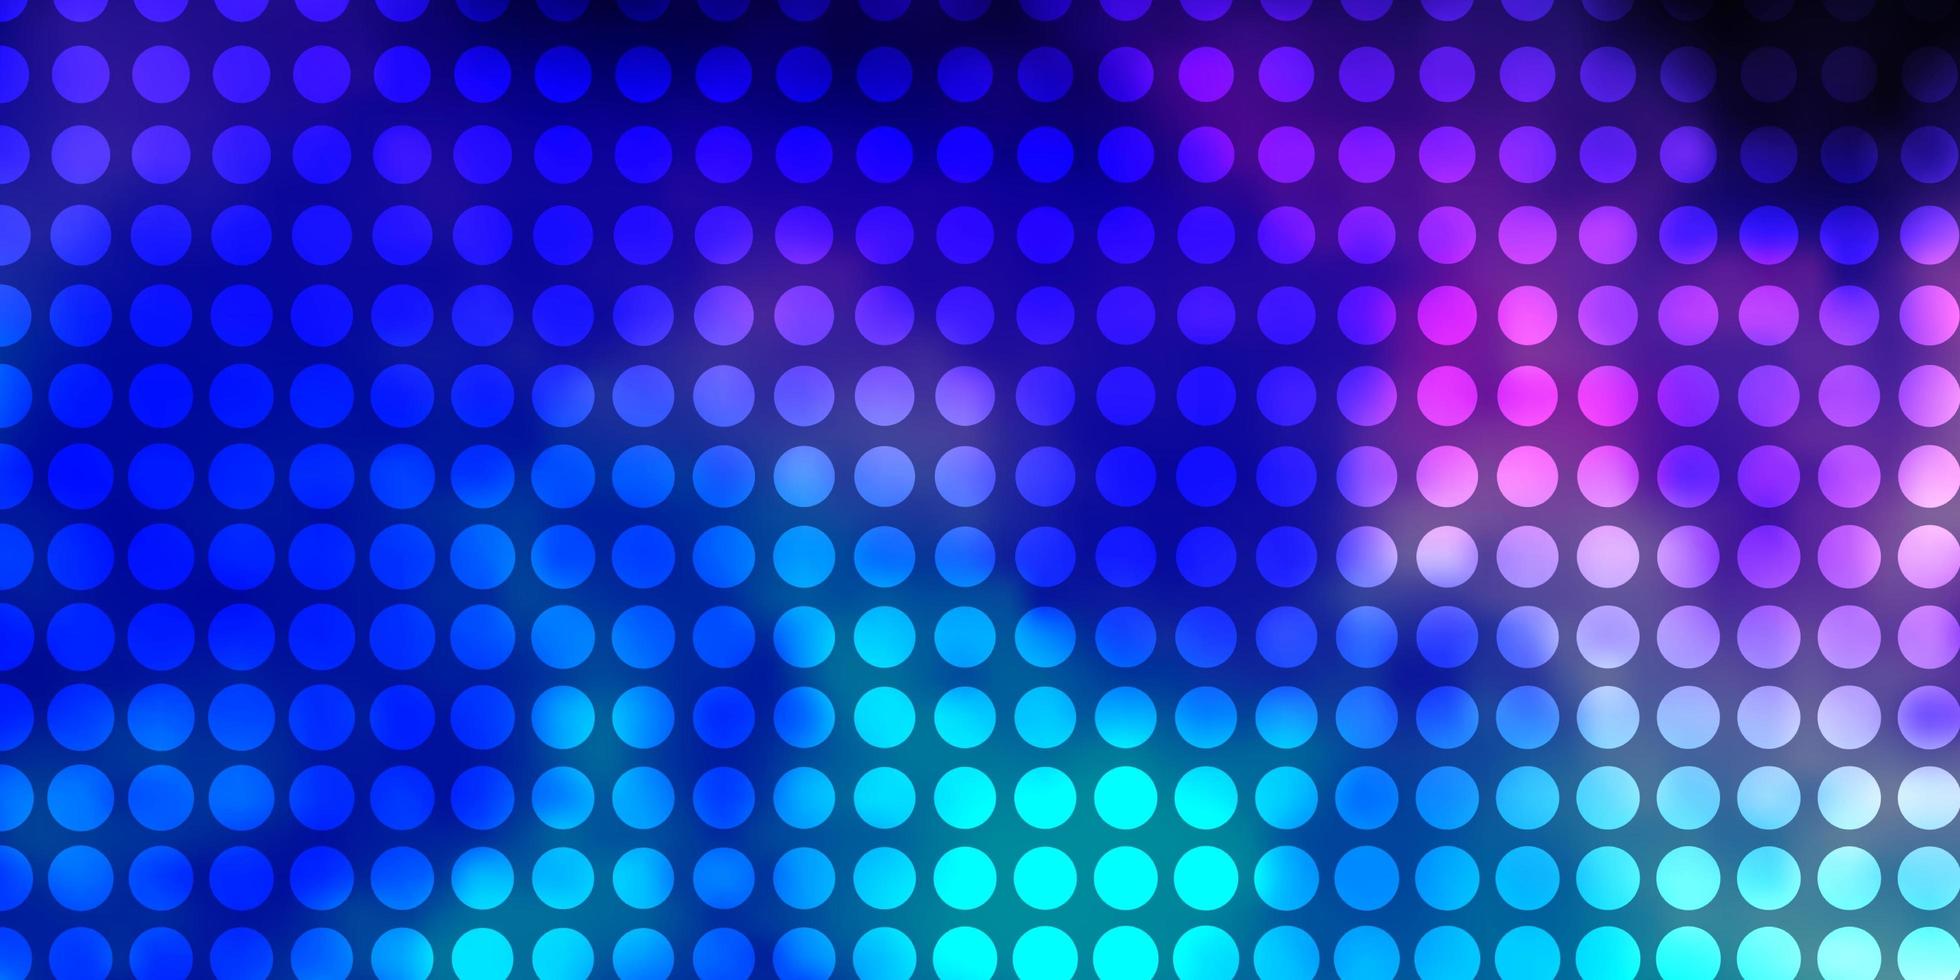 dunkelrosa, blaue Vektorbeschaffenheit mit Kreisen. vektor